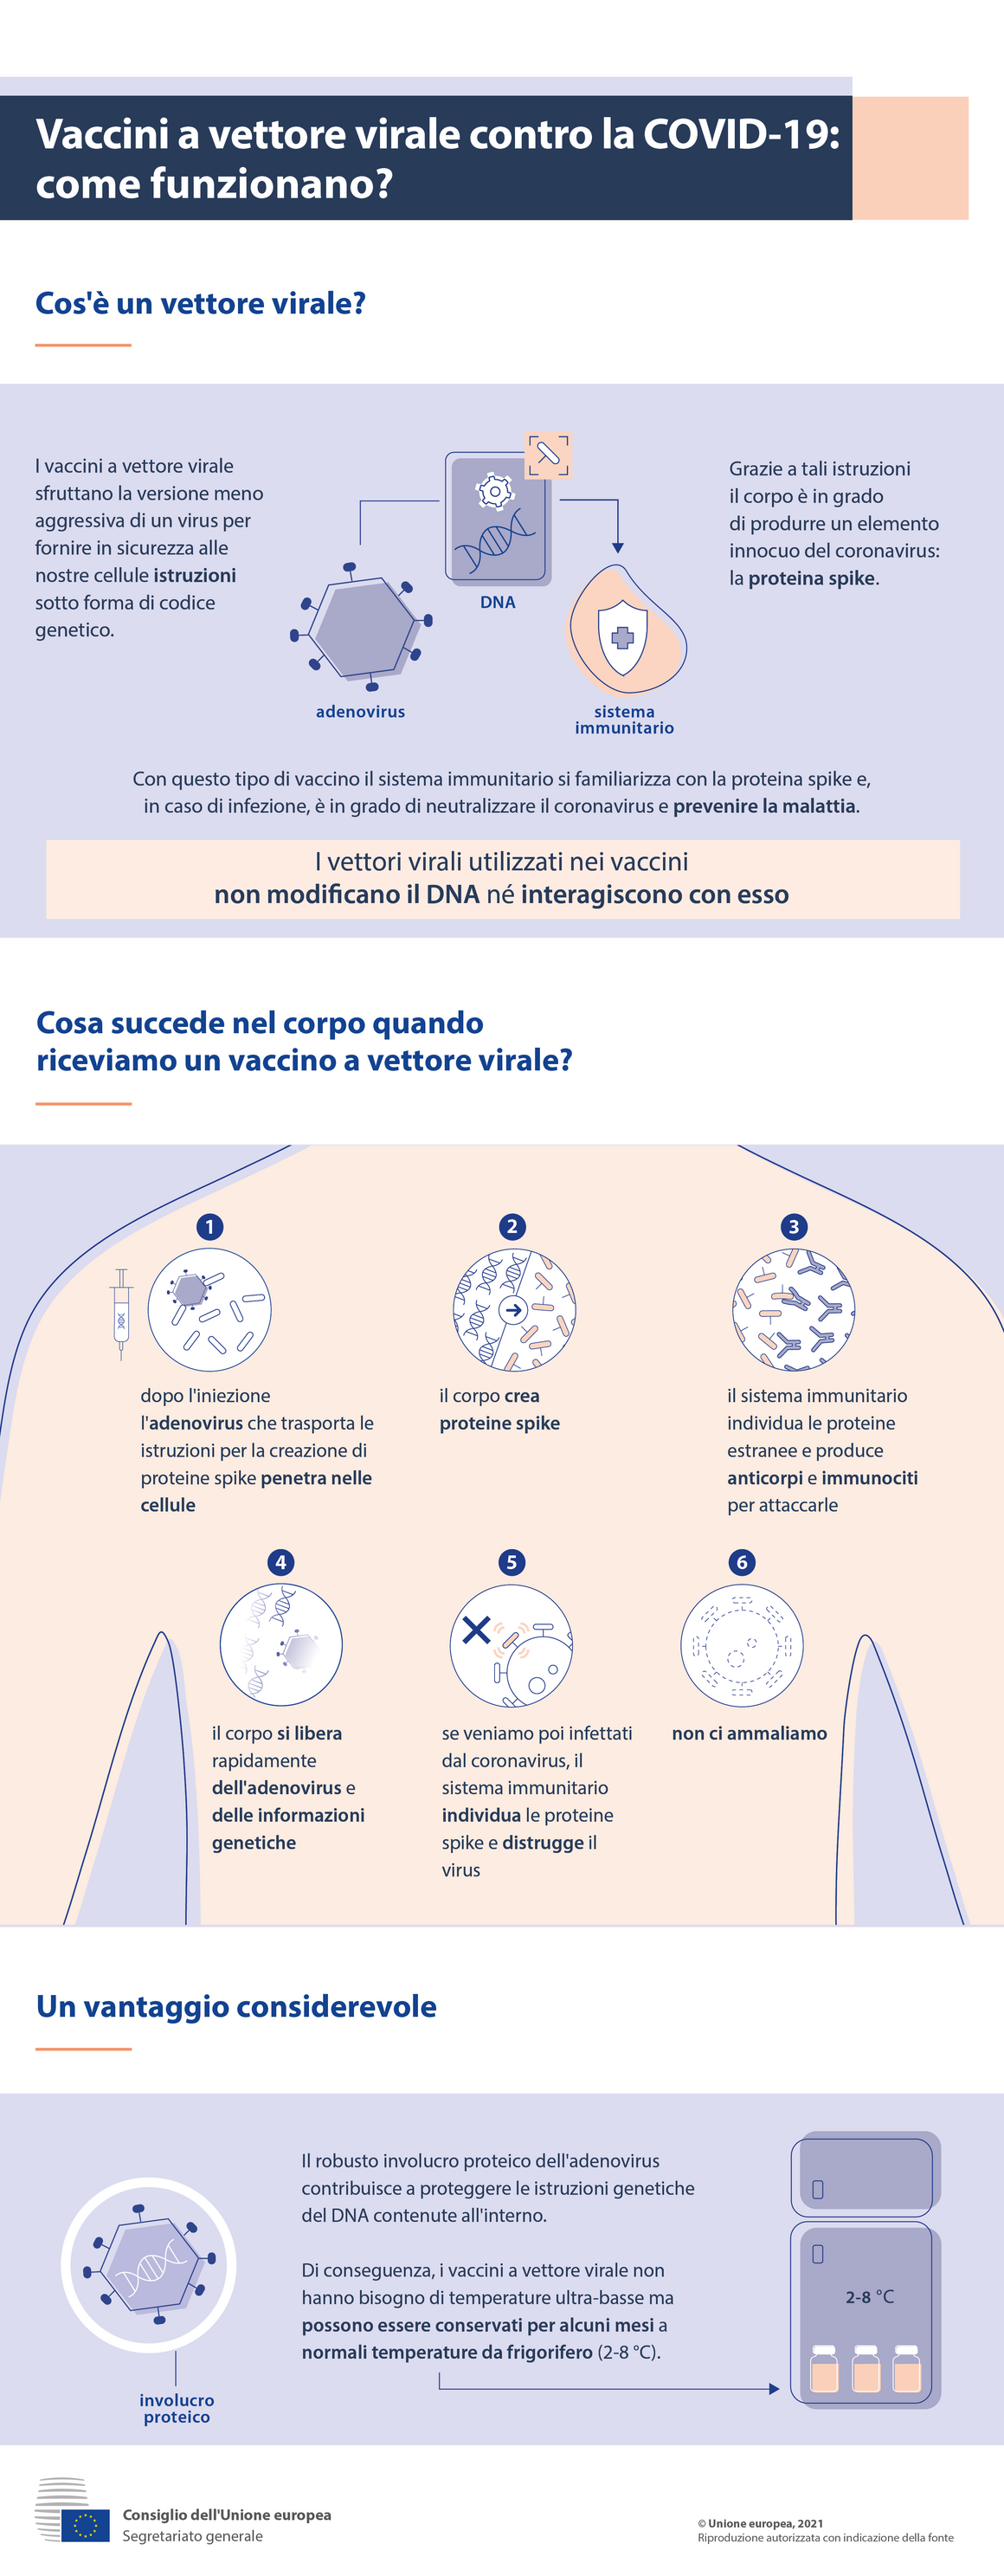 Infografica - Vaccini a vettore virale contro la Covid-19: come funzionano?